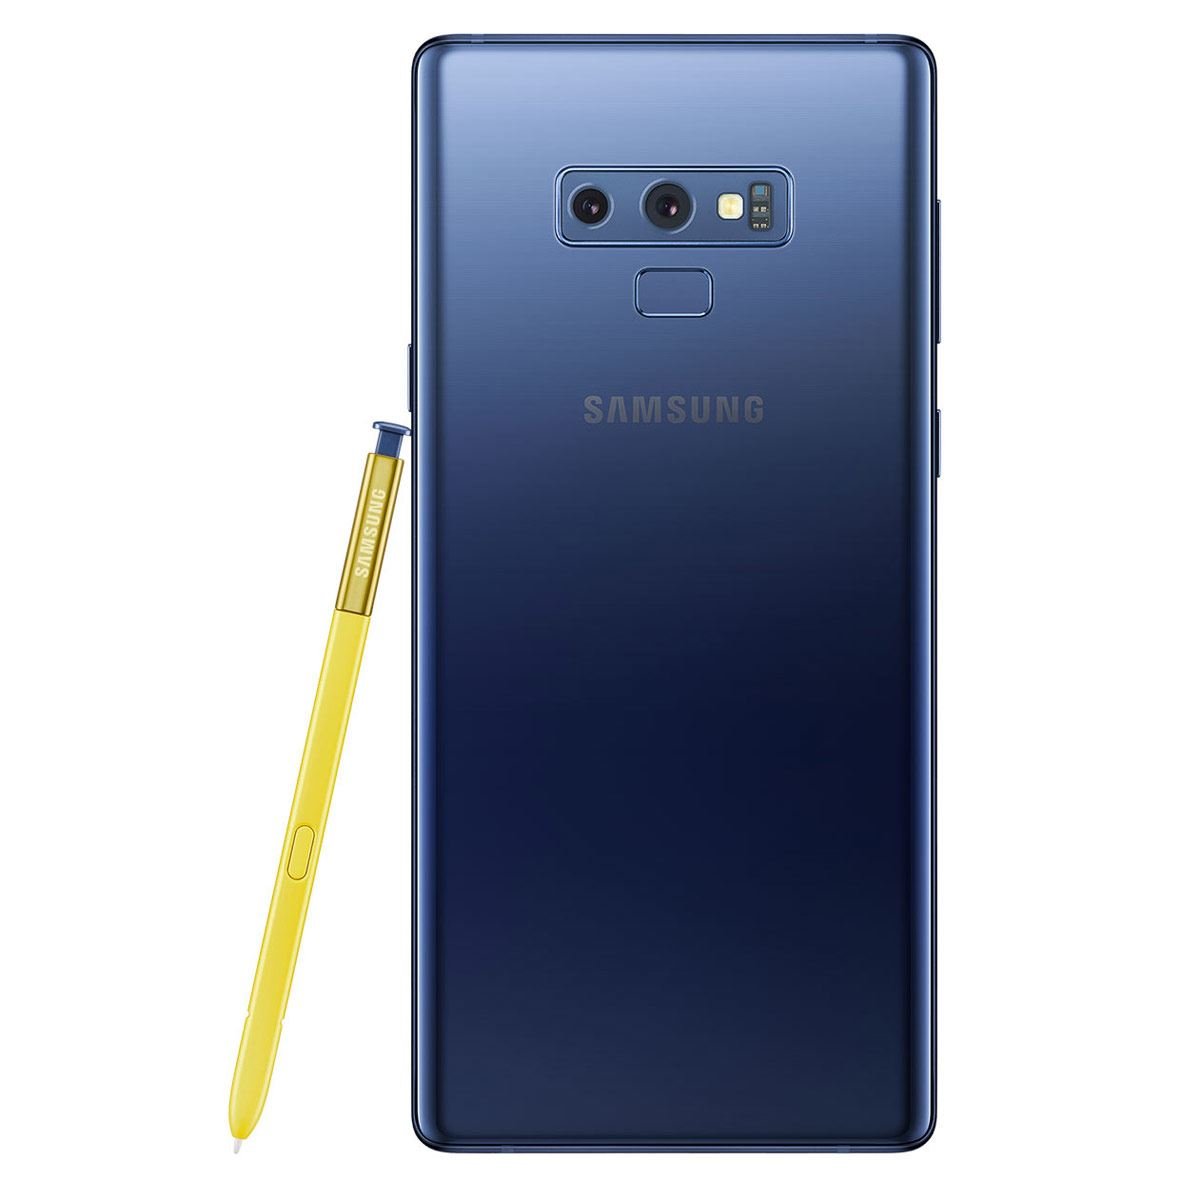 Samsung Galaxy Note 9 N9600 Color Azul R9 (Telcel)